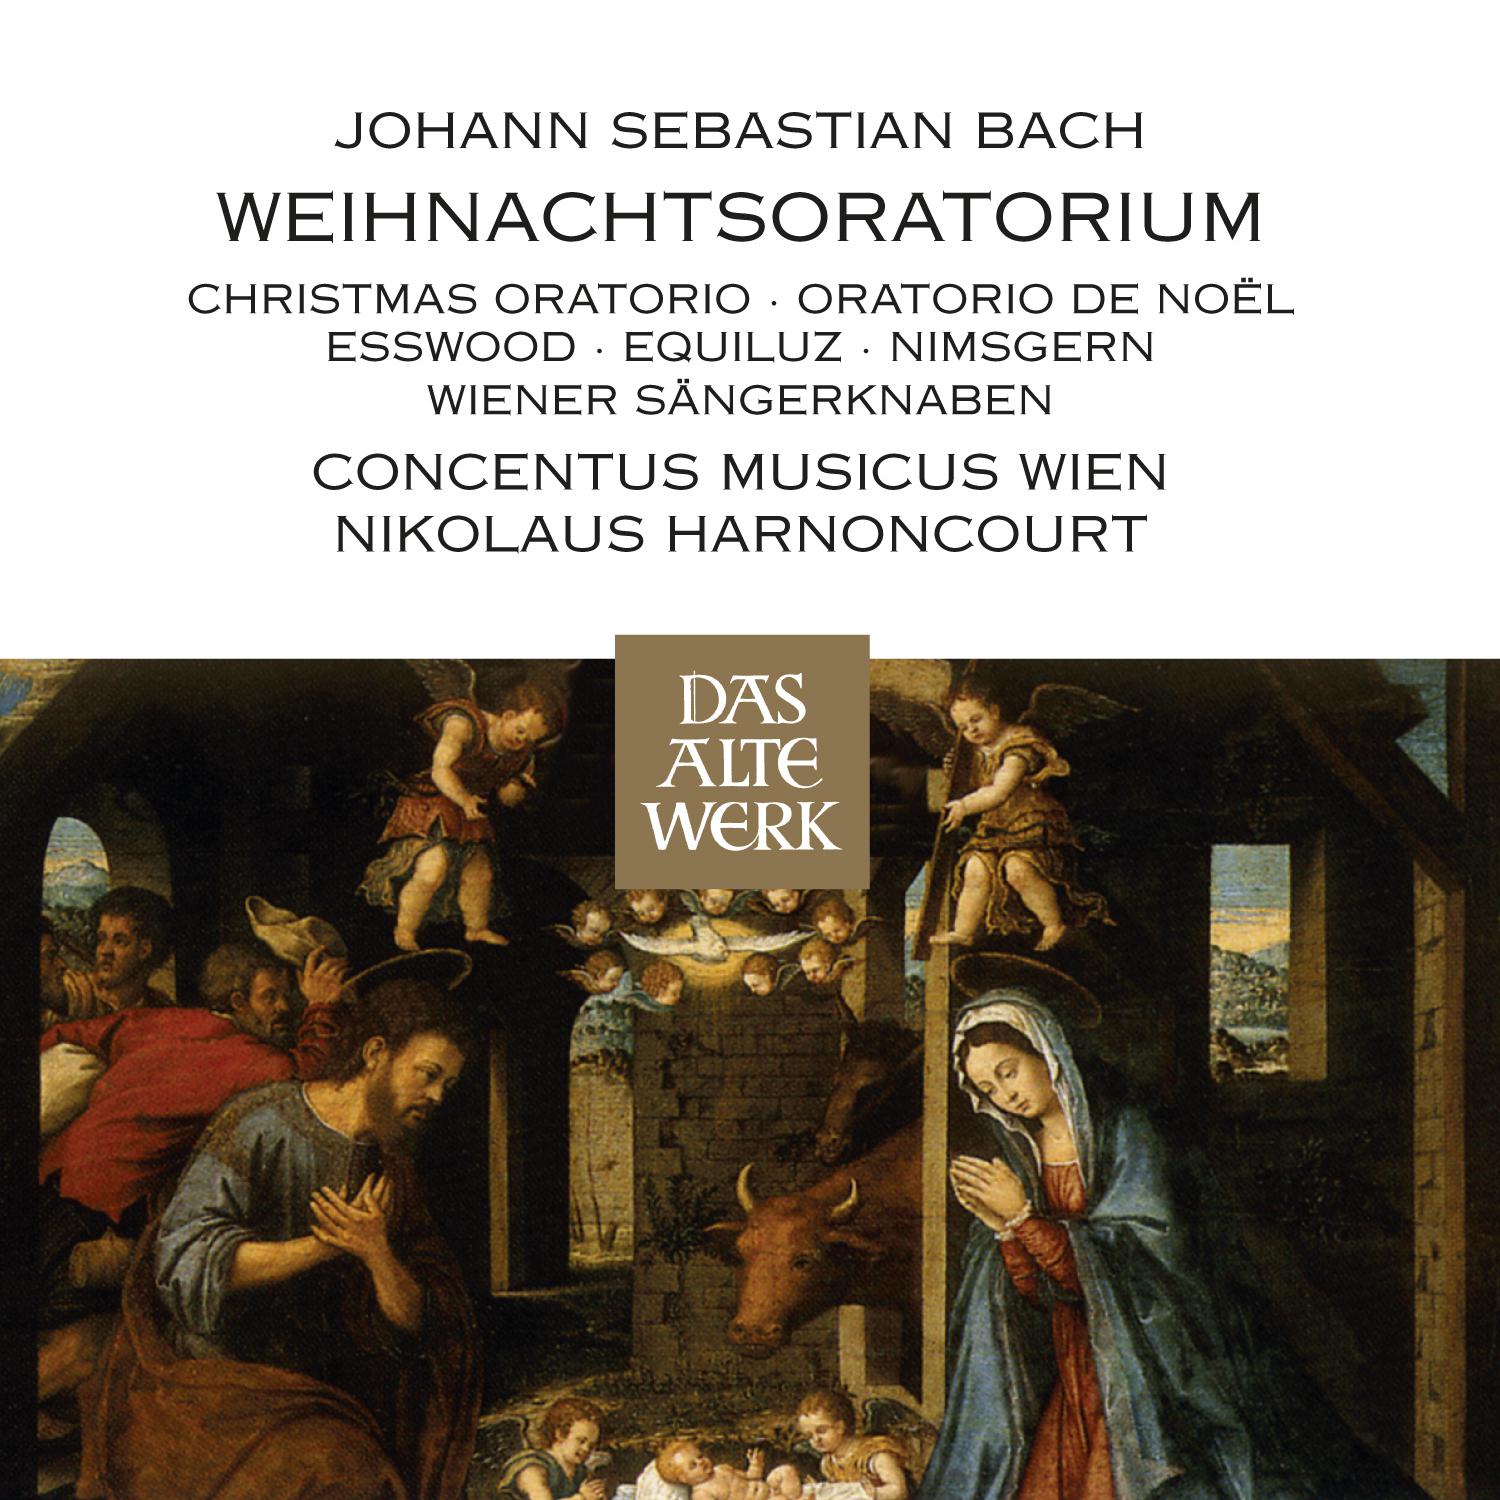 Weihnachtsoratorium, BWV 248, Part III: 'Herrscher des Himmels, erhöre das Lallen'